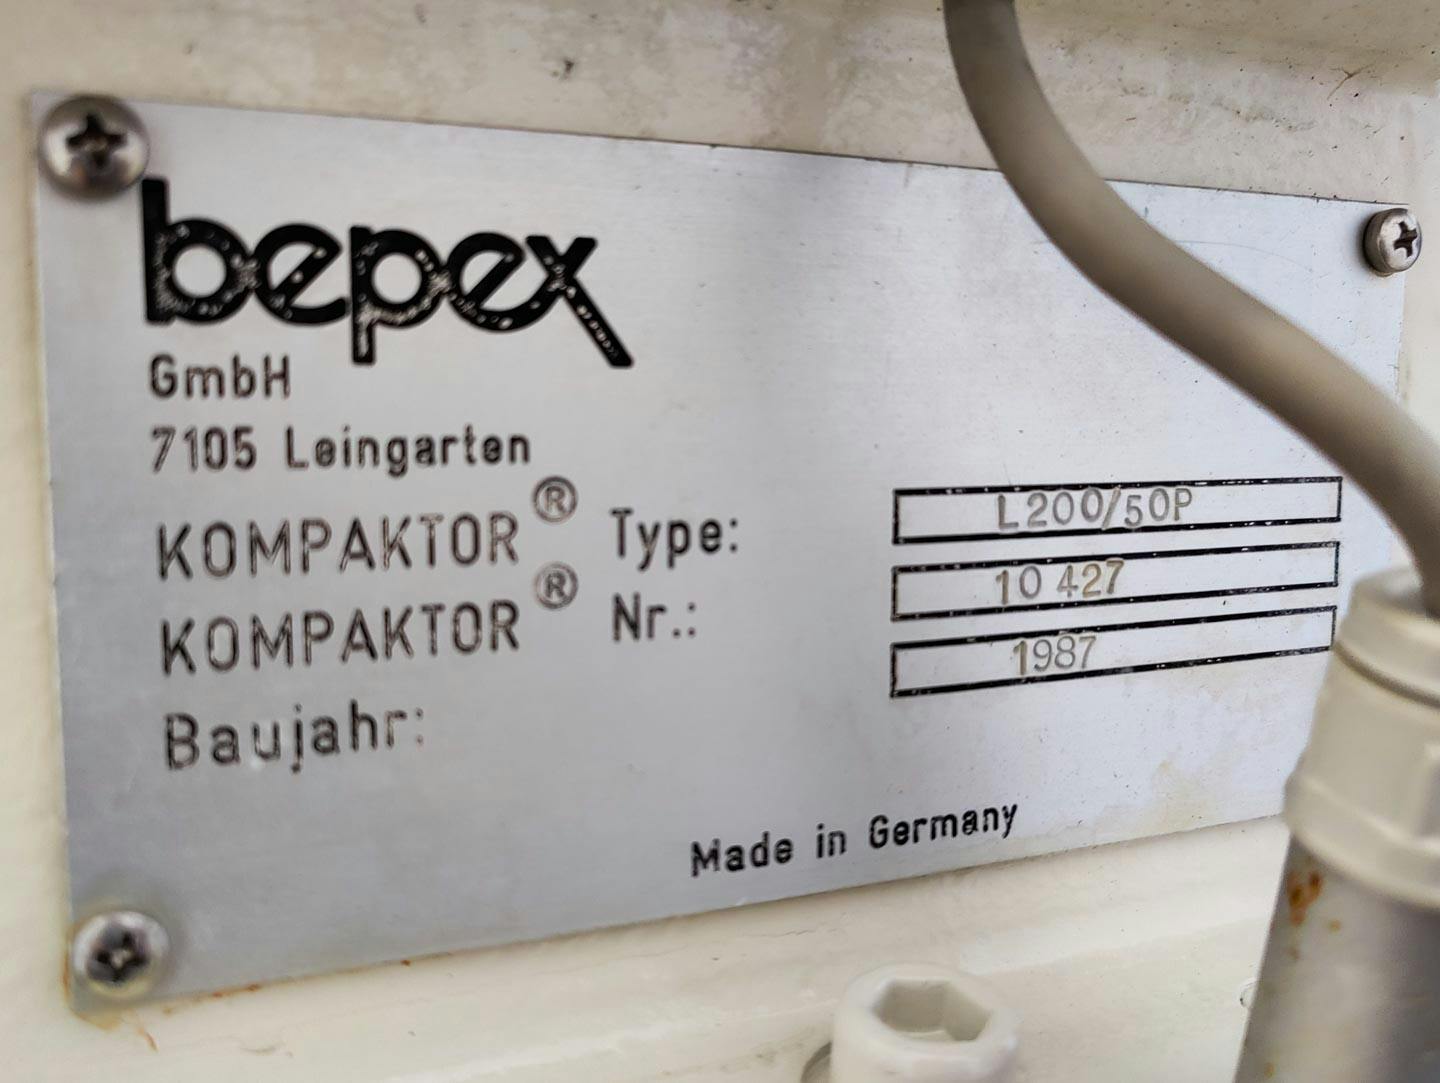 Bepex L-200/50P - Roll compactor - image 14